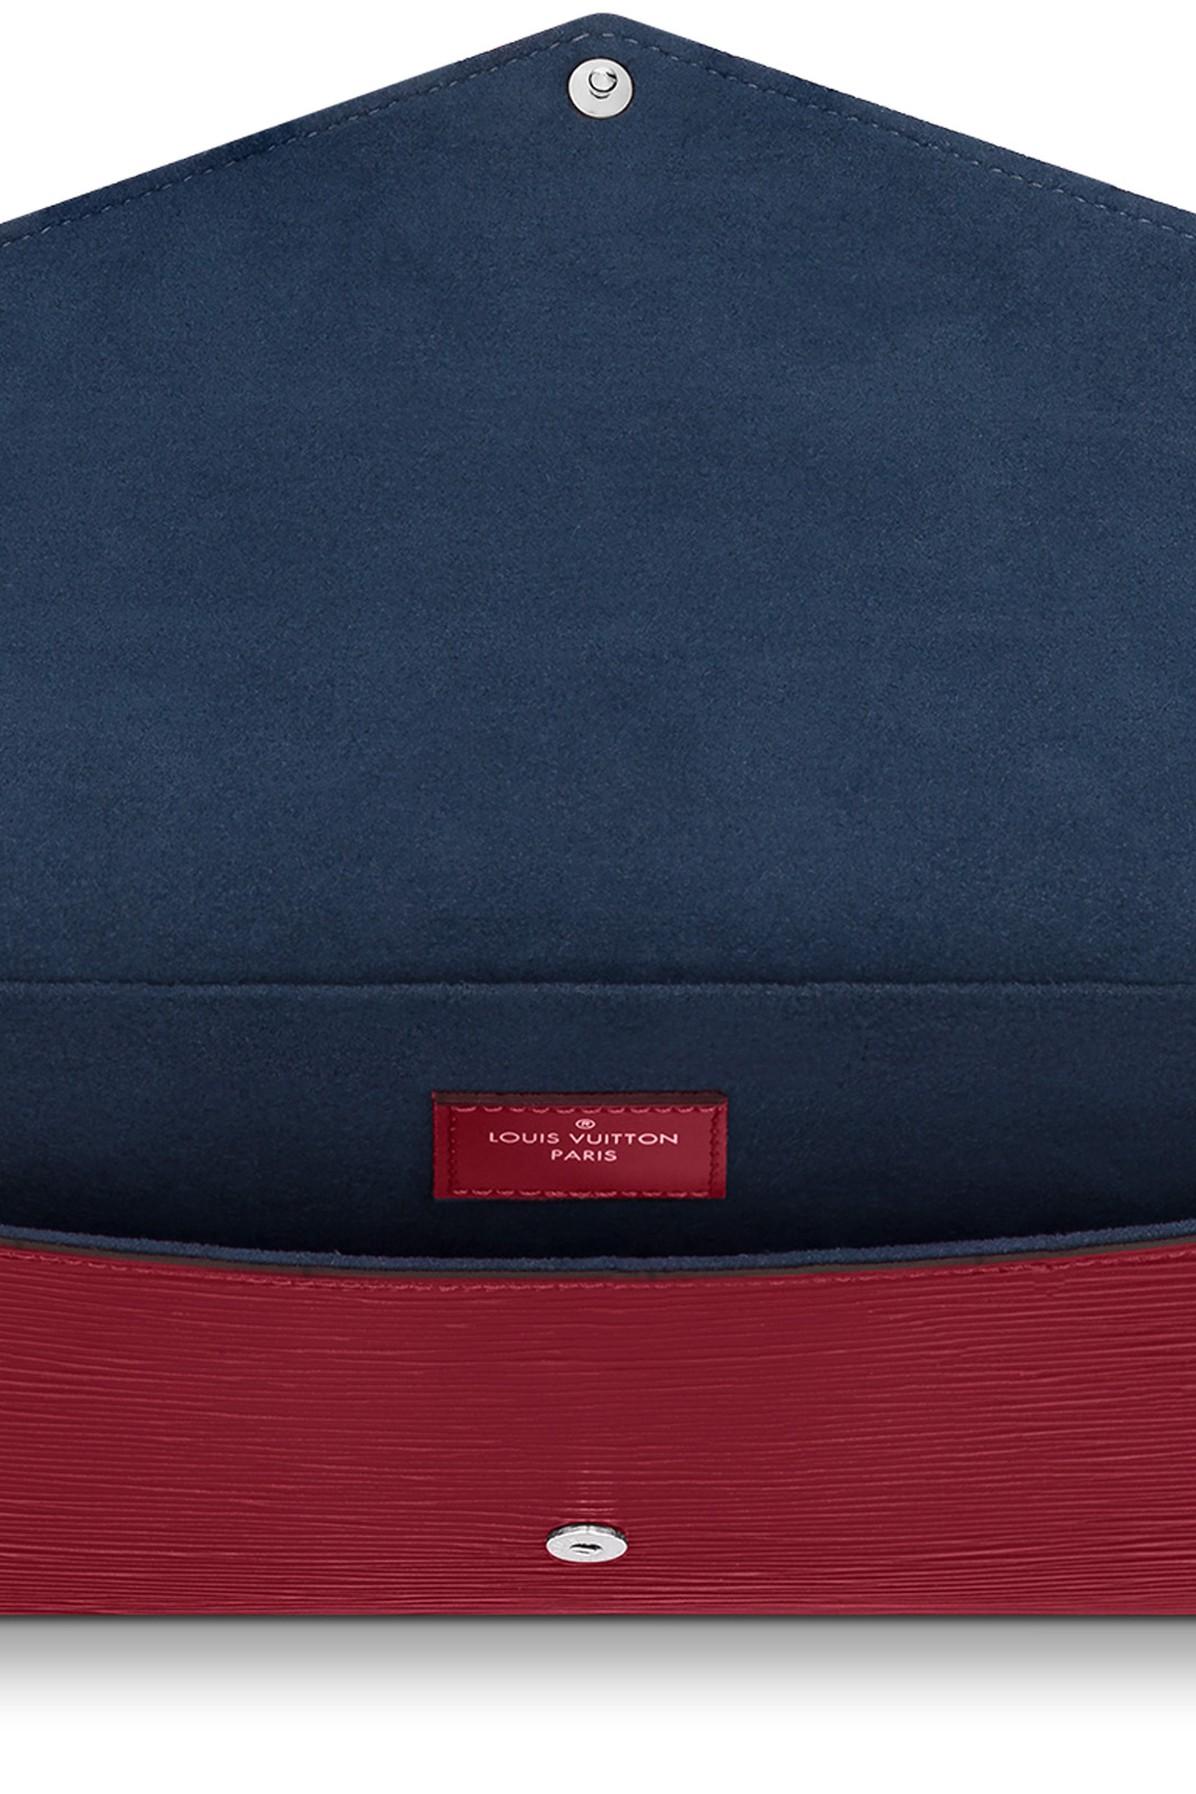 Louis Vuitton M41559 Red Epi Leather Felicie Pochette (TJ2108)